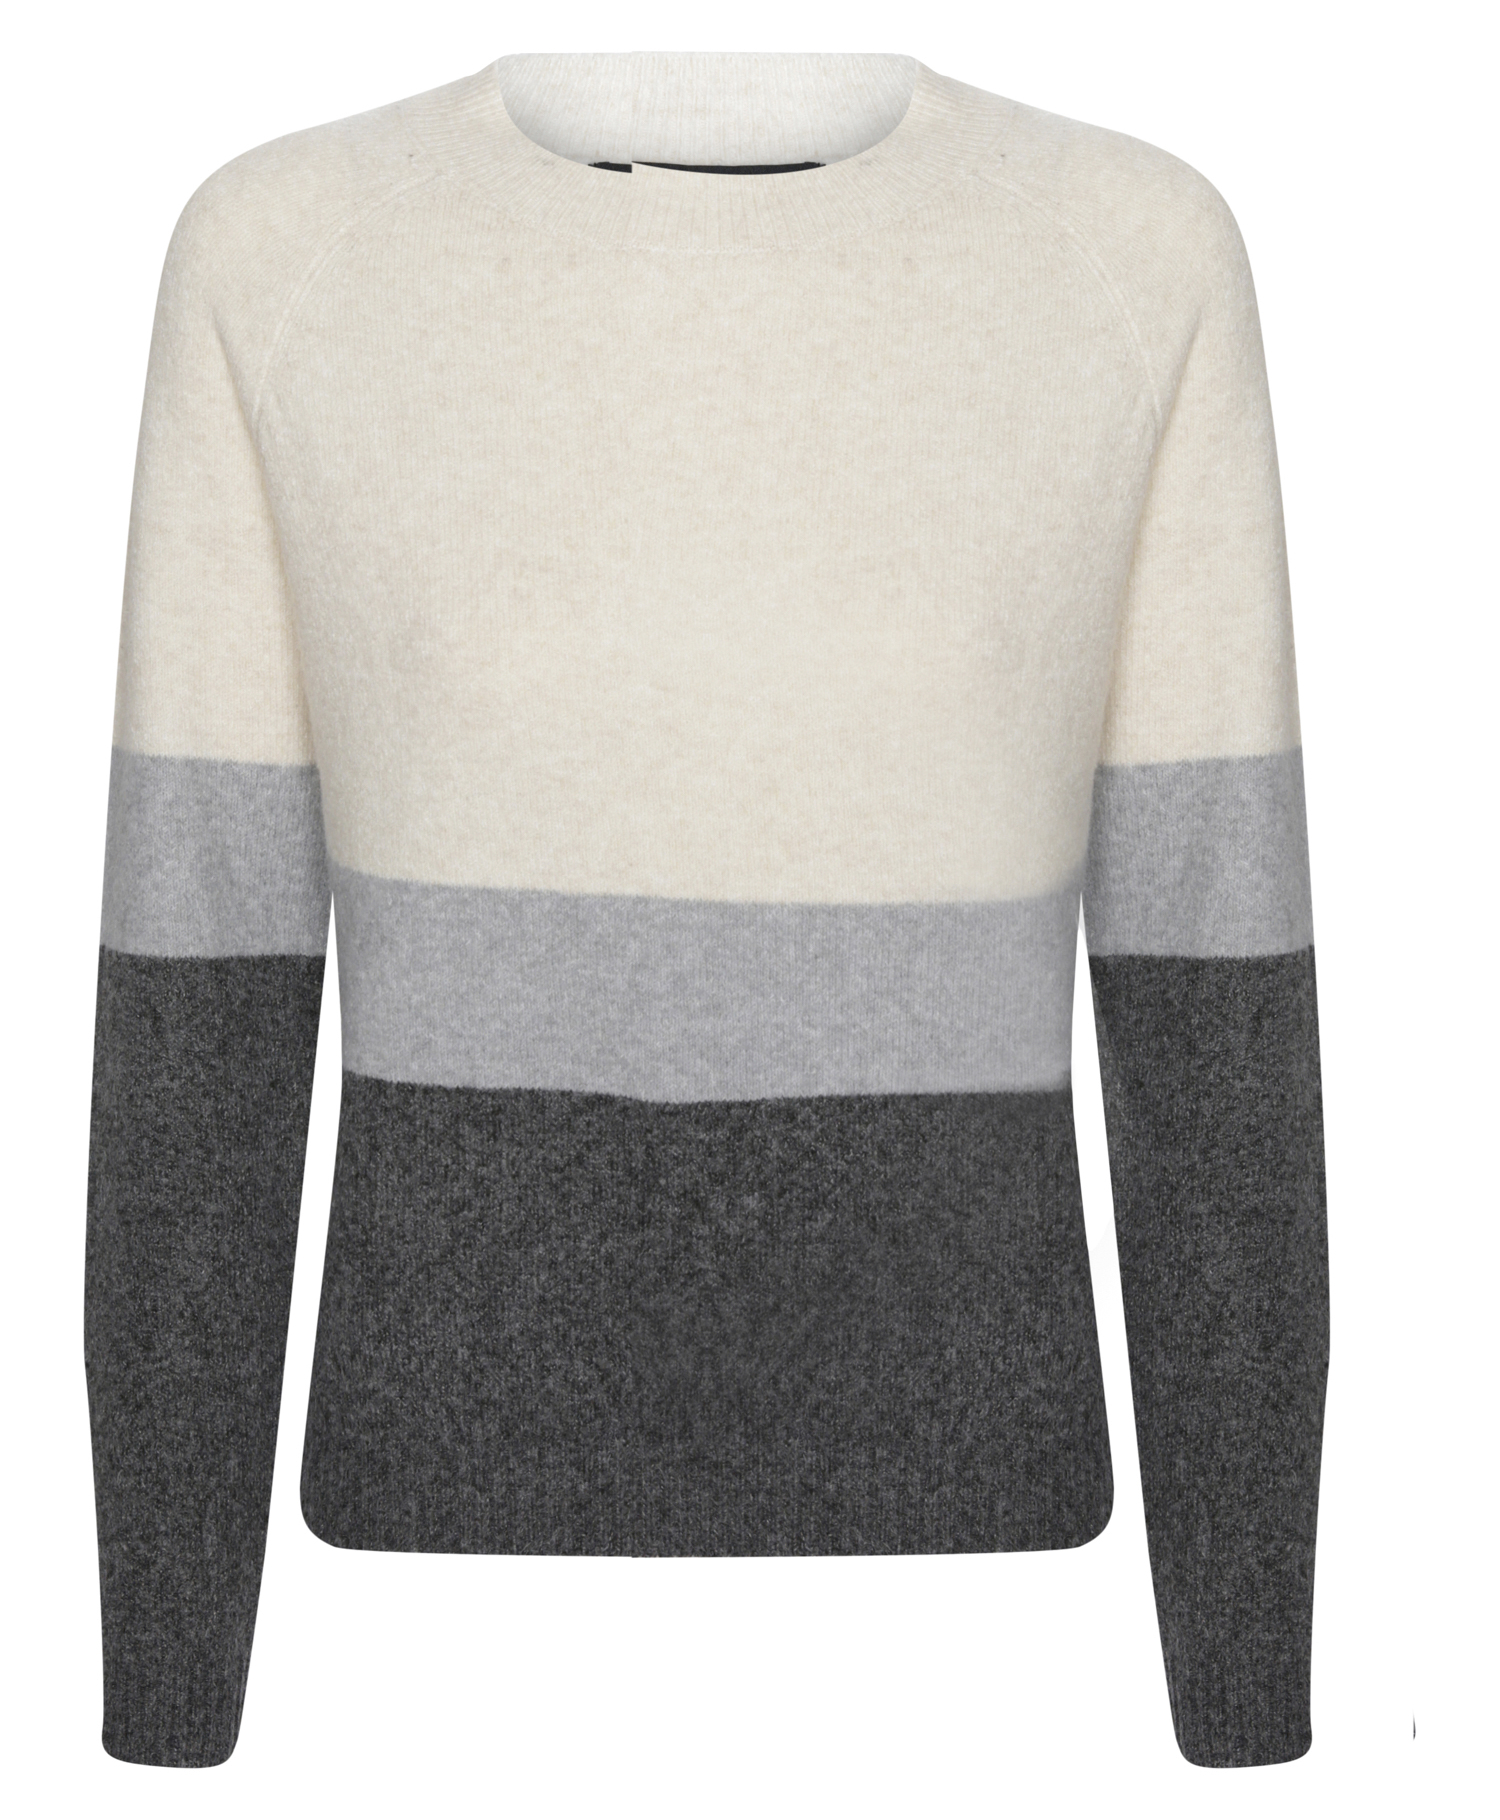 Vero Moda Color Block Sweater